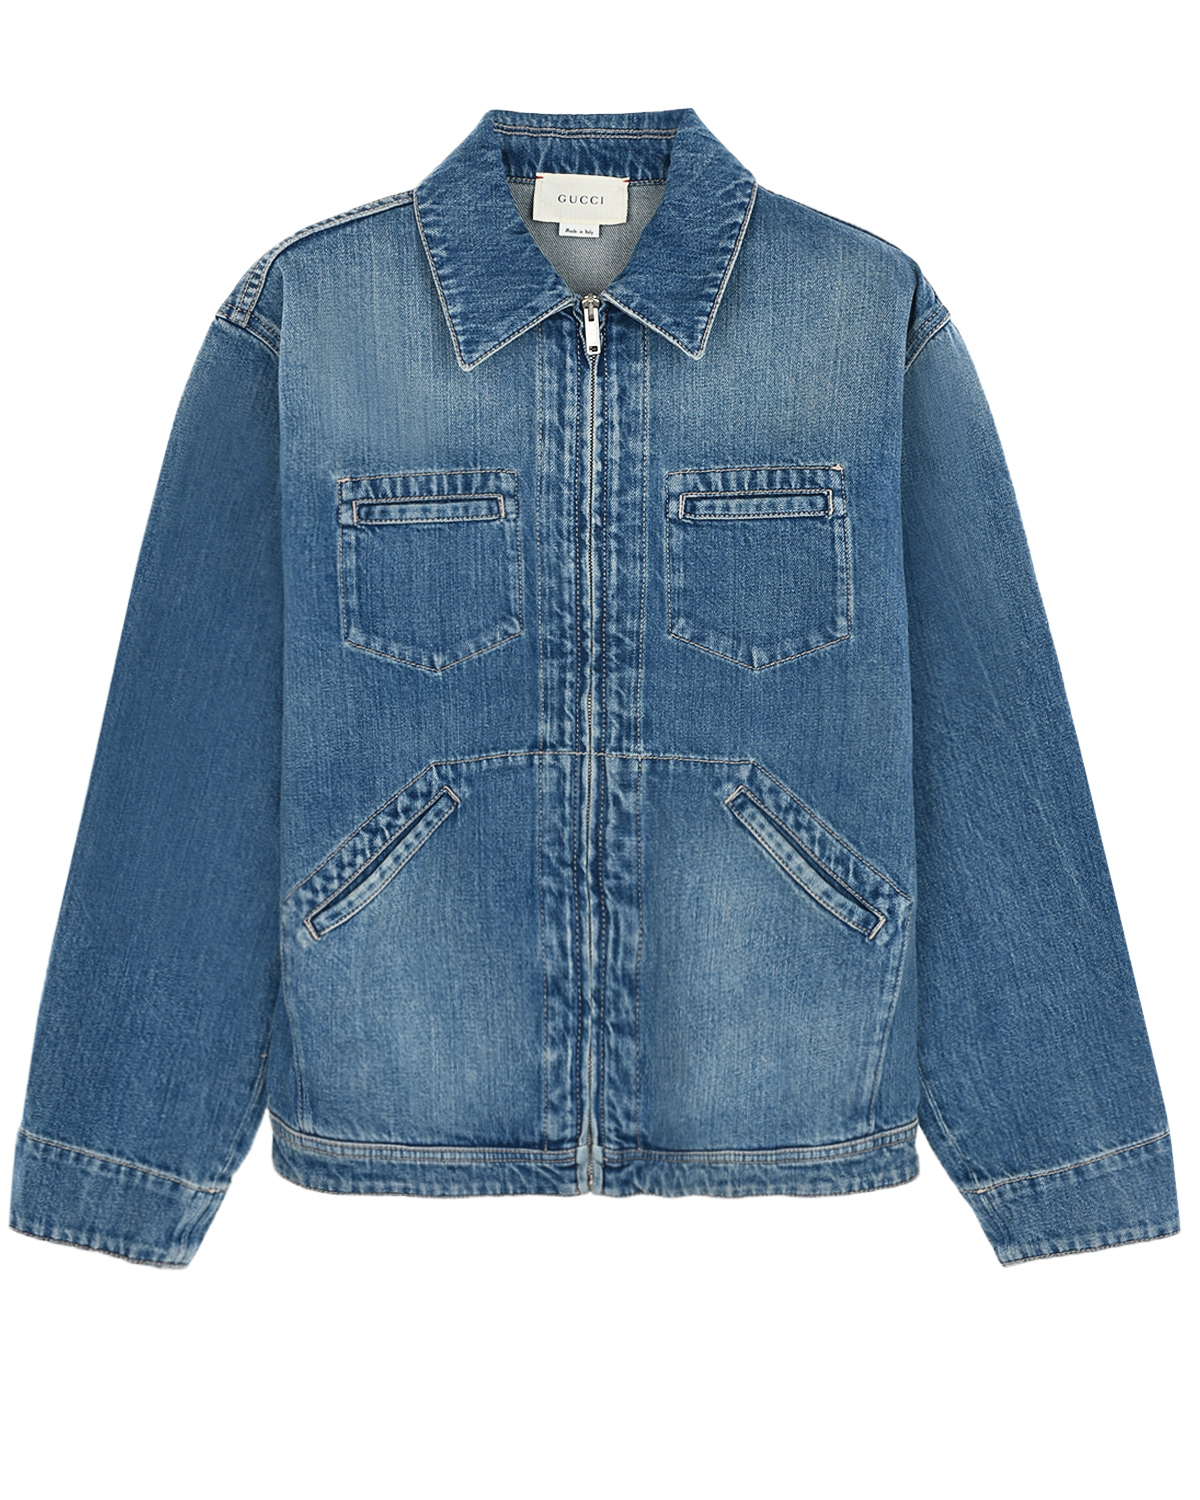 Джинсовая куртка на молнии GUCCI детская, размер 104, цвет синий